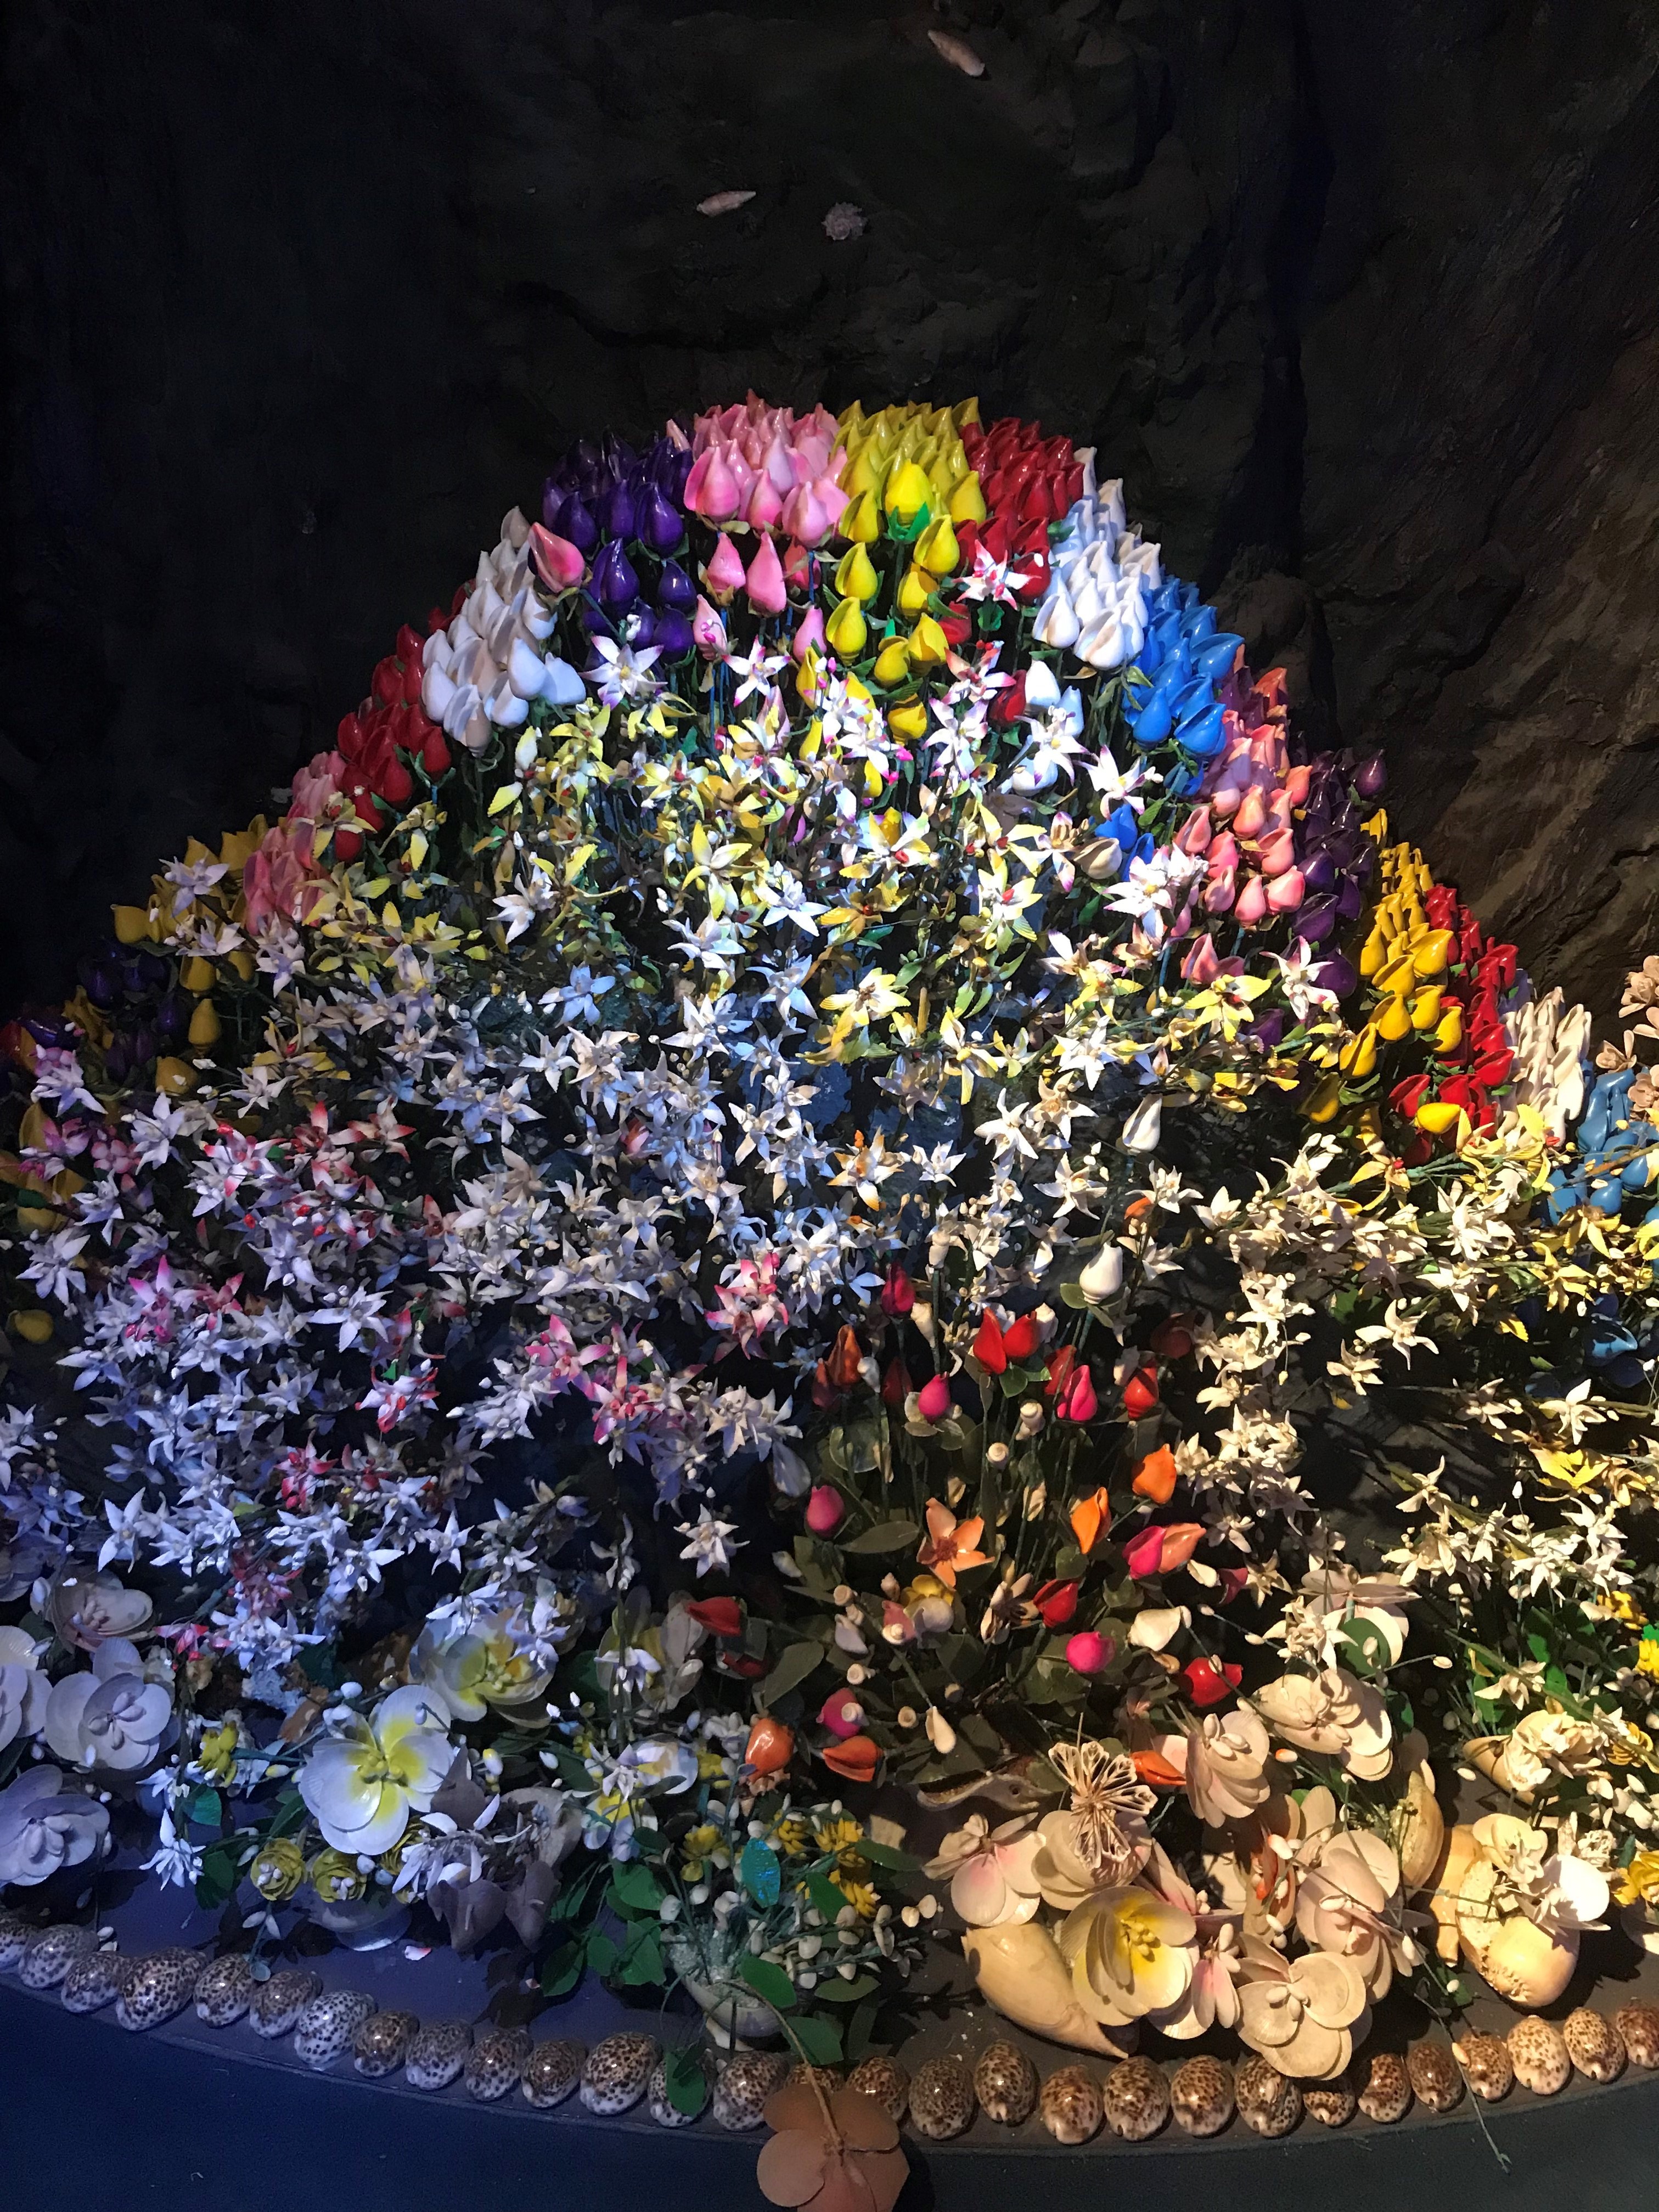 竹島ファンタジー館の貝殻で作ったカラフルなお花たちや展示物